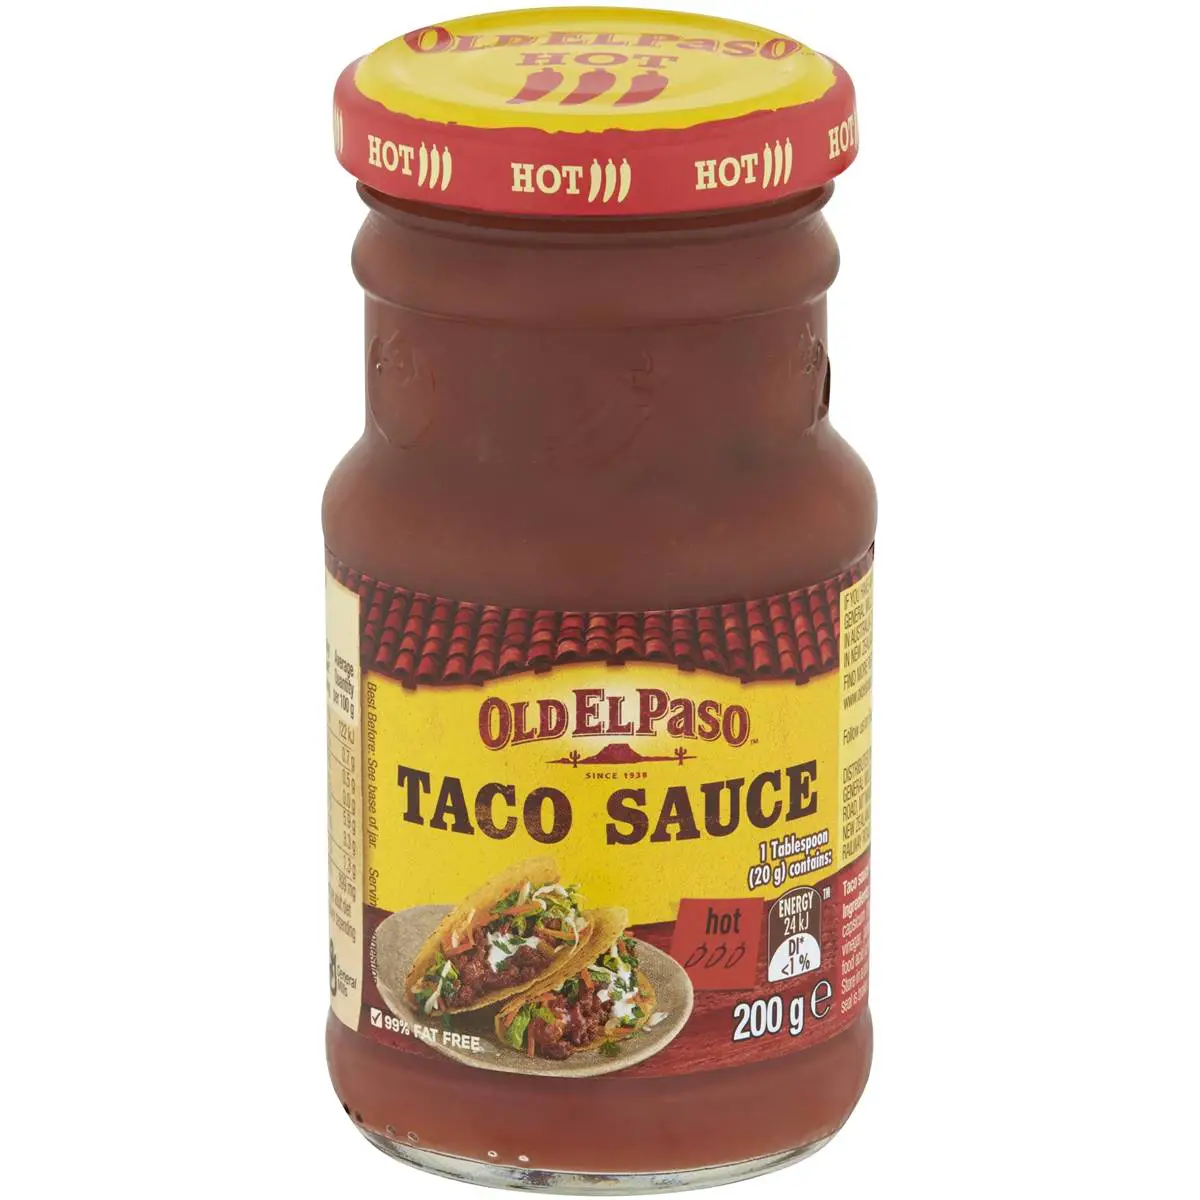 Old El Paso Hot Taco Sauce 200g